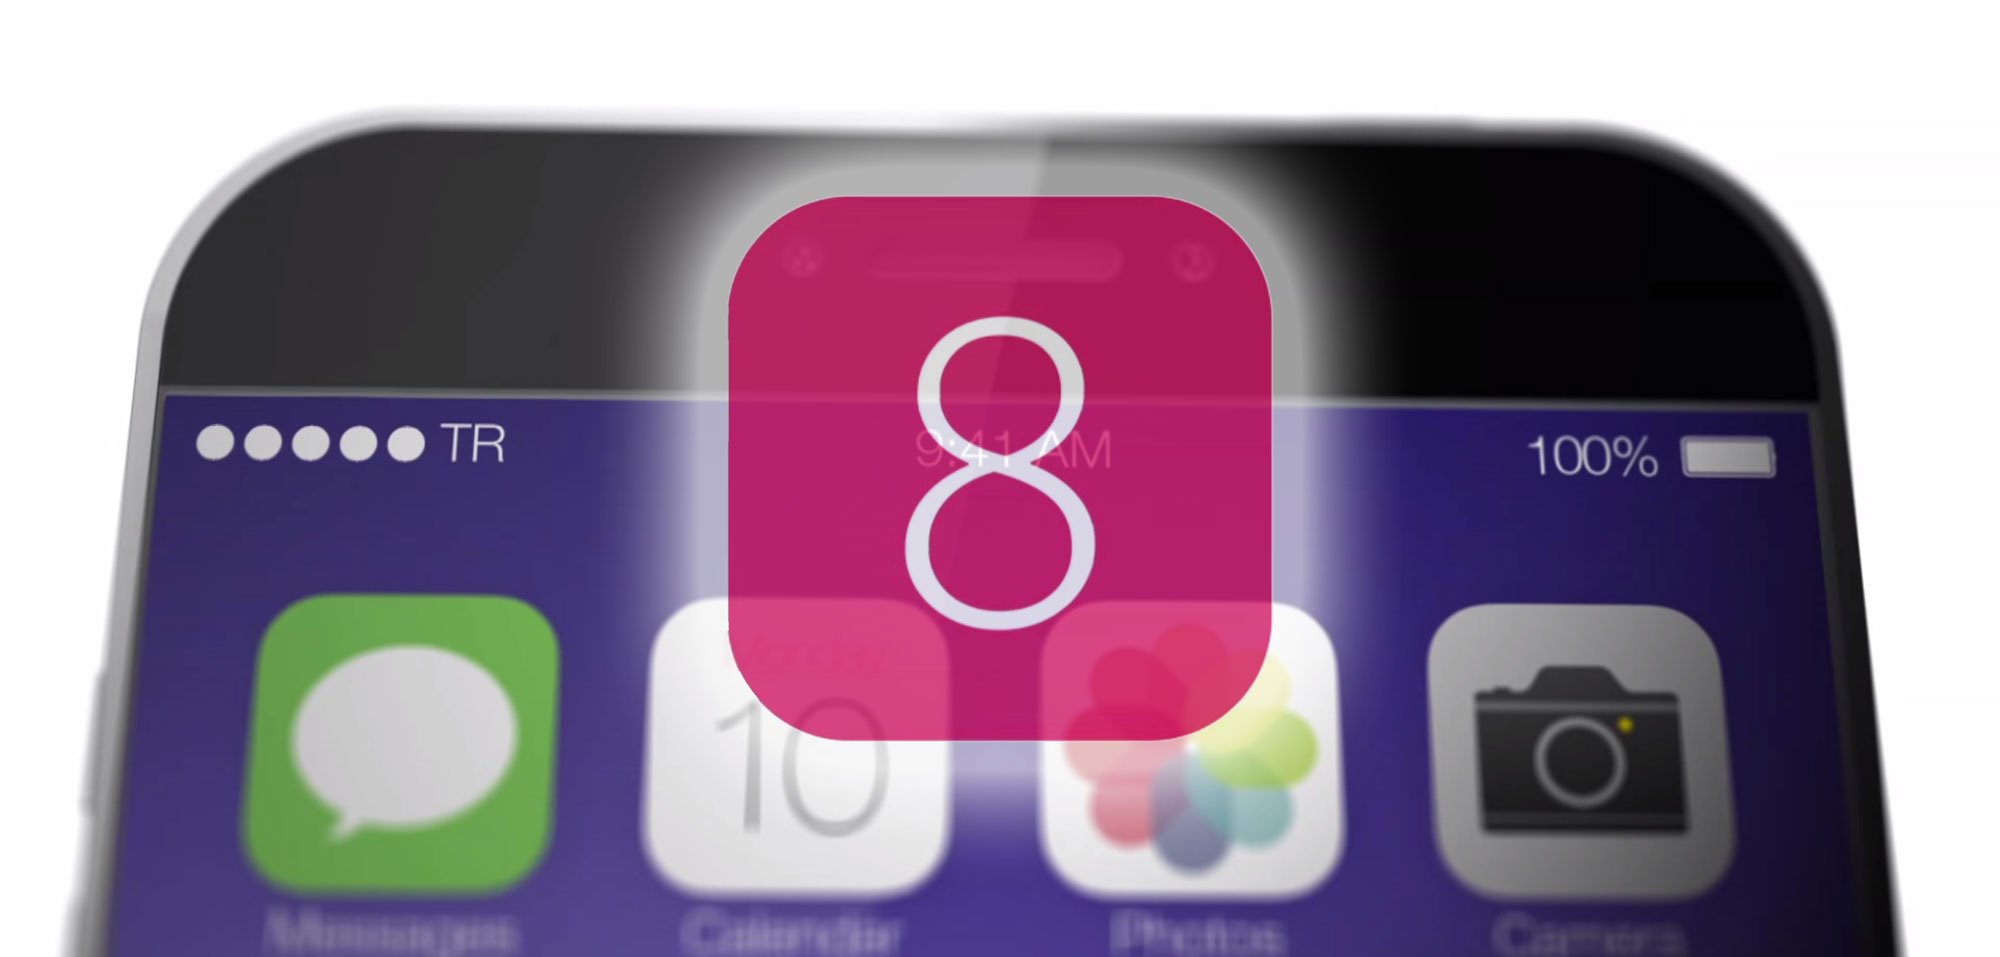 iOS 8: Neue Funktionen erst mit iOS 8.1 statt iOS 8? 6